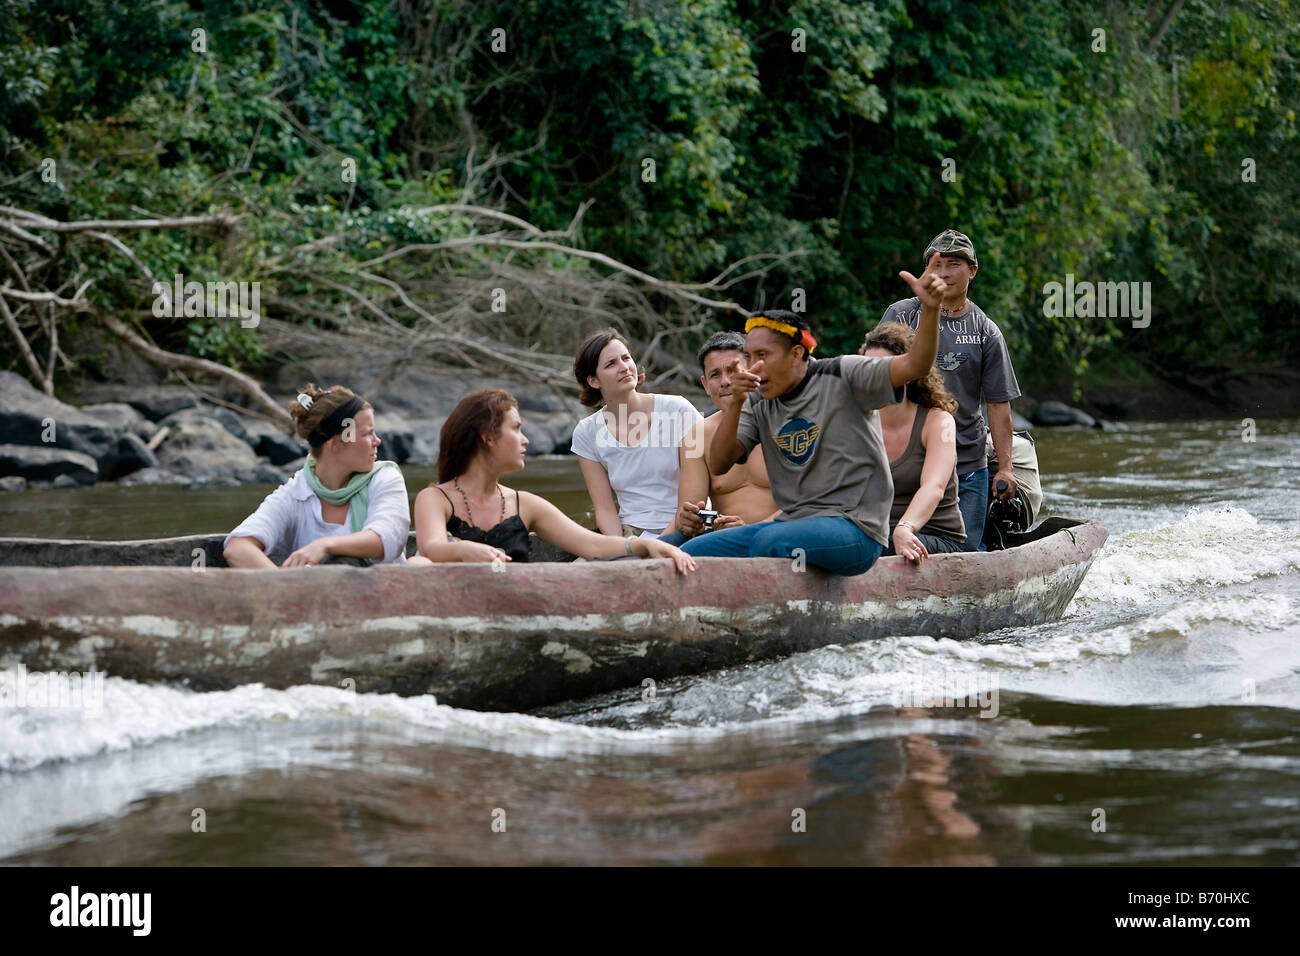 Le Suriname, Kwamalasamutu, les touristes en tournée avec creusés dans des canots, appelé 'korjaal', sur la rivière Sipaliwini. Banque D'Images